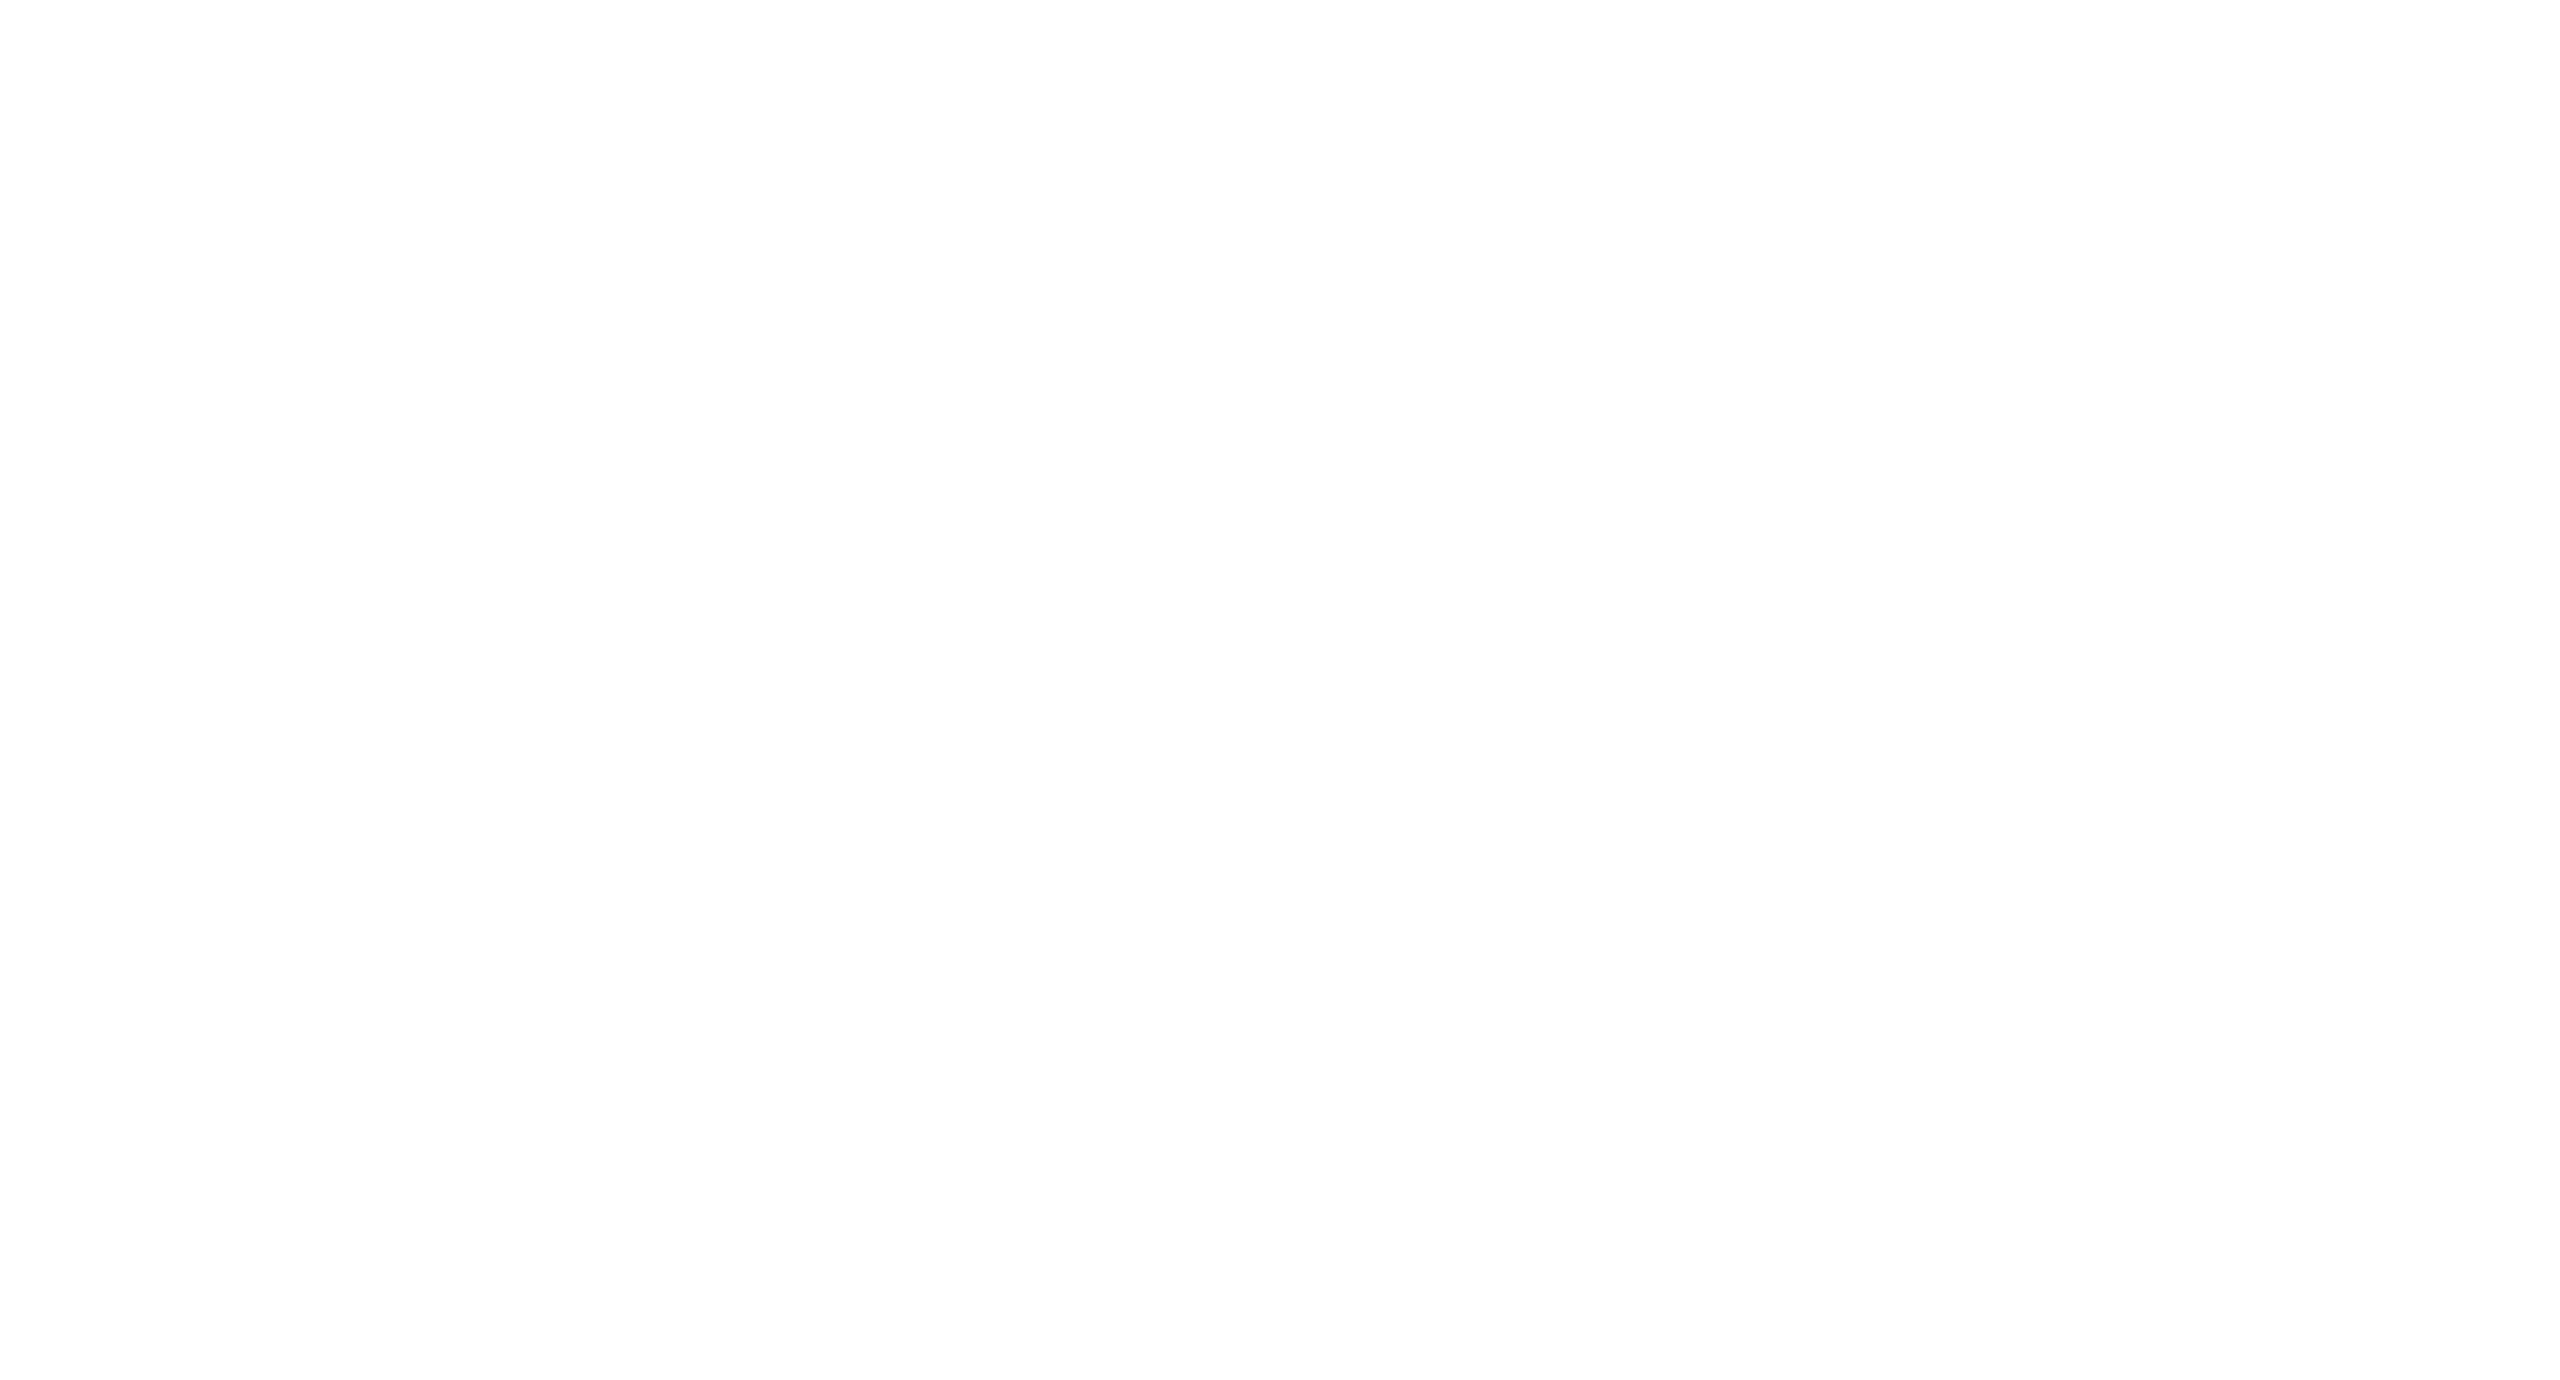 Hvidt logo for cafeen EUROPA 1989